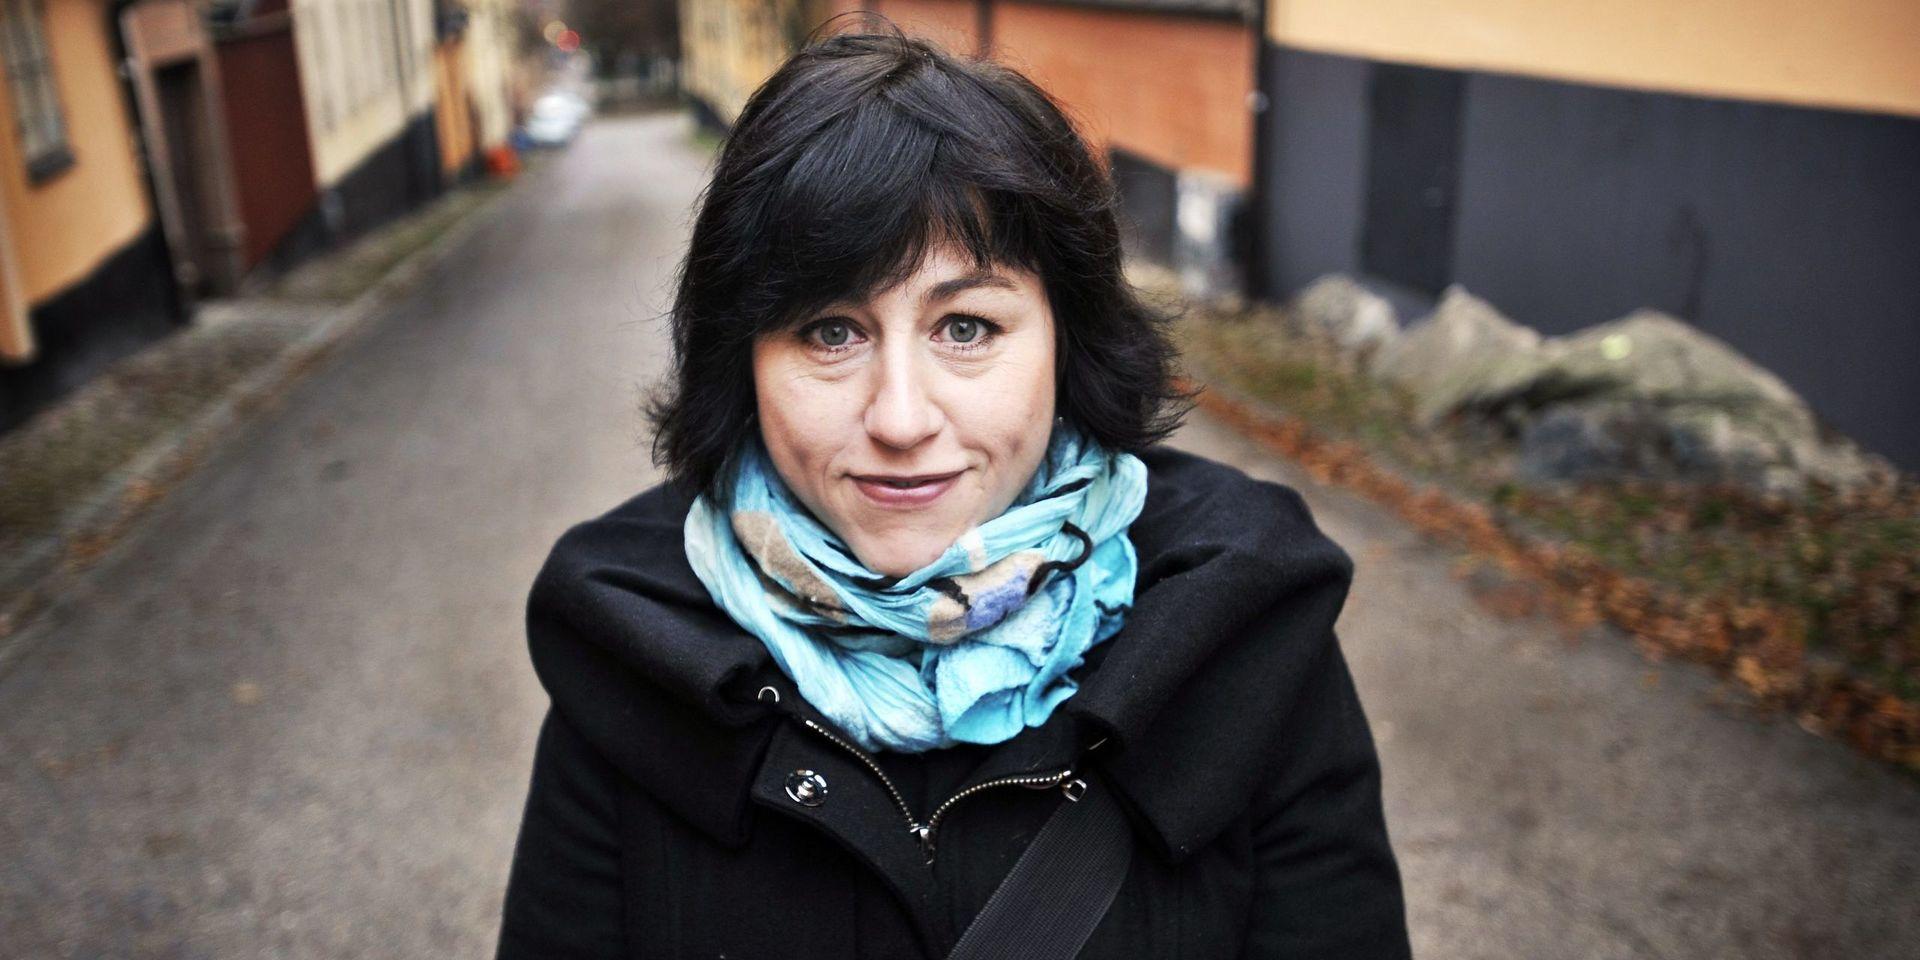 Hanne Kjöller, journalist och författare och ledarskribent på Dagens Nyheter.